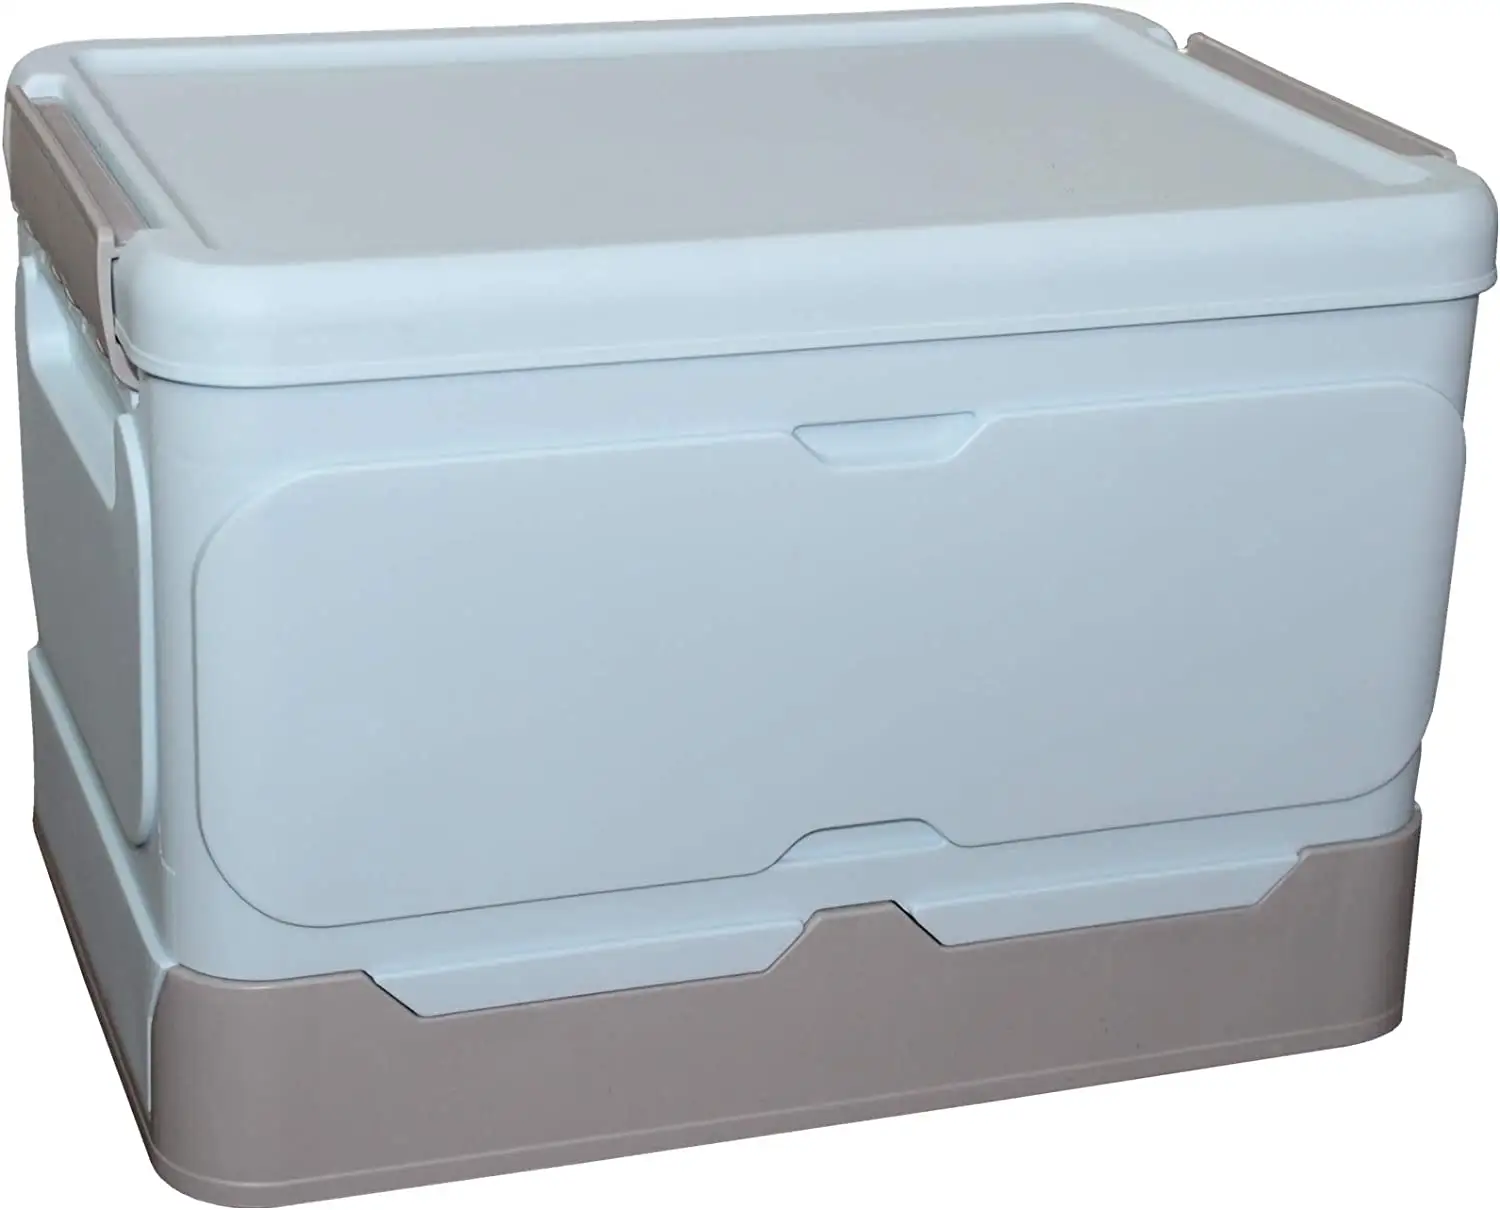 Caja de almacenamiento plegable de plástico multifuncional con tapa para uso doméstico Contenedores de almacenamiento antideslizantes impermeables